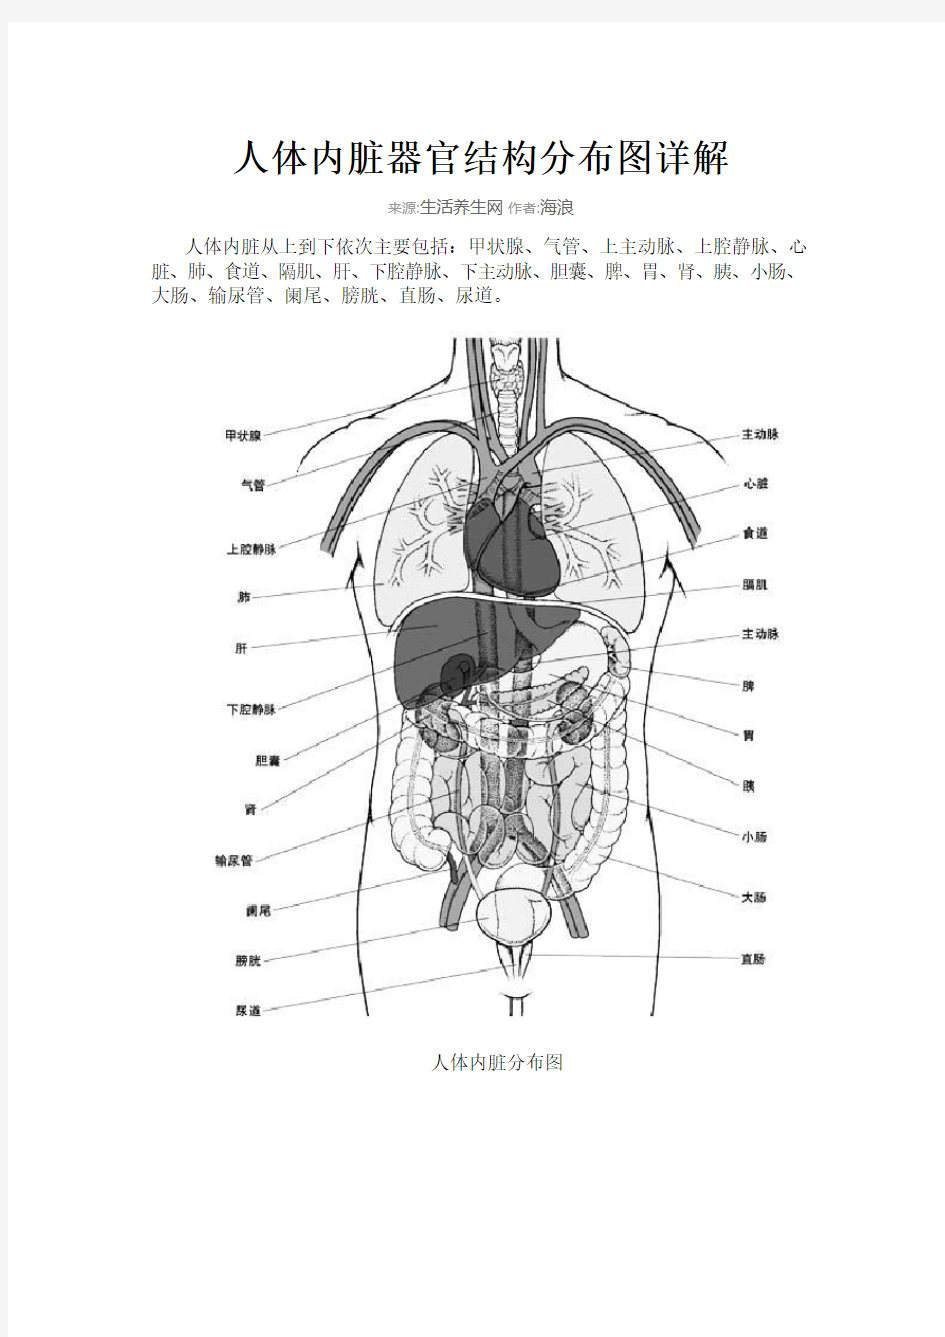 人体内脏器官结构分布图详解